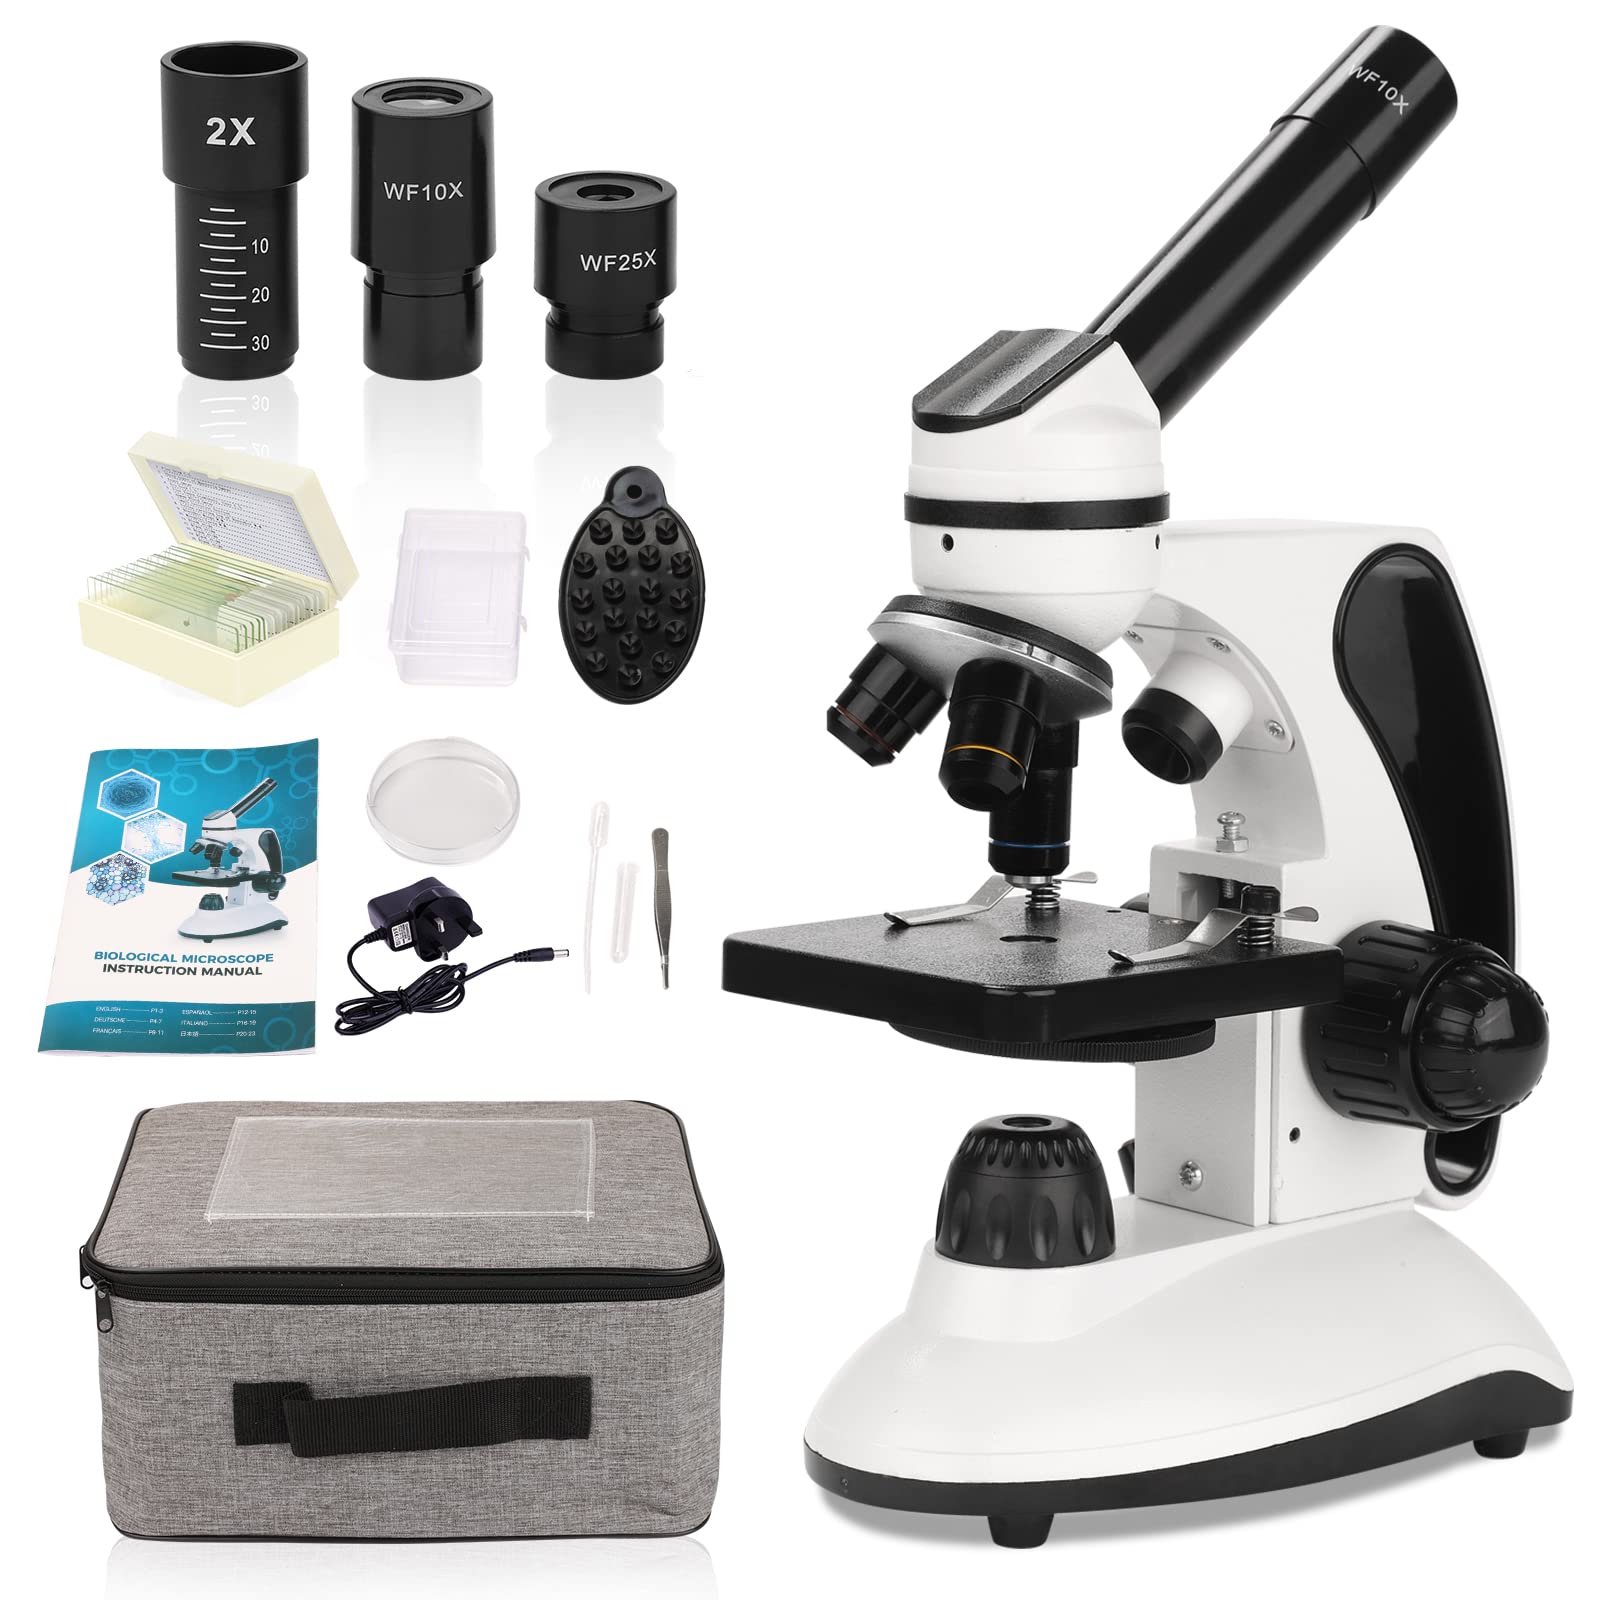 Mikroskop für Kinder mit Objektträger Set, Dual-LED-Beleuchtung,Professionelle Microscope für Schullabor Zuhause Biologische Bildung